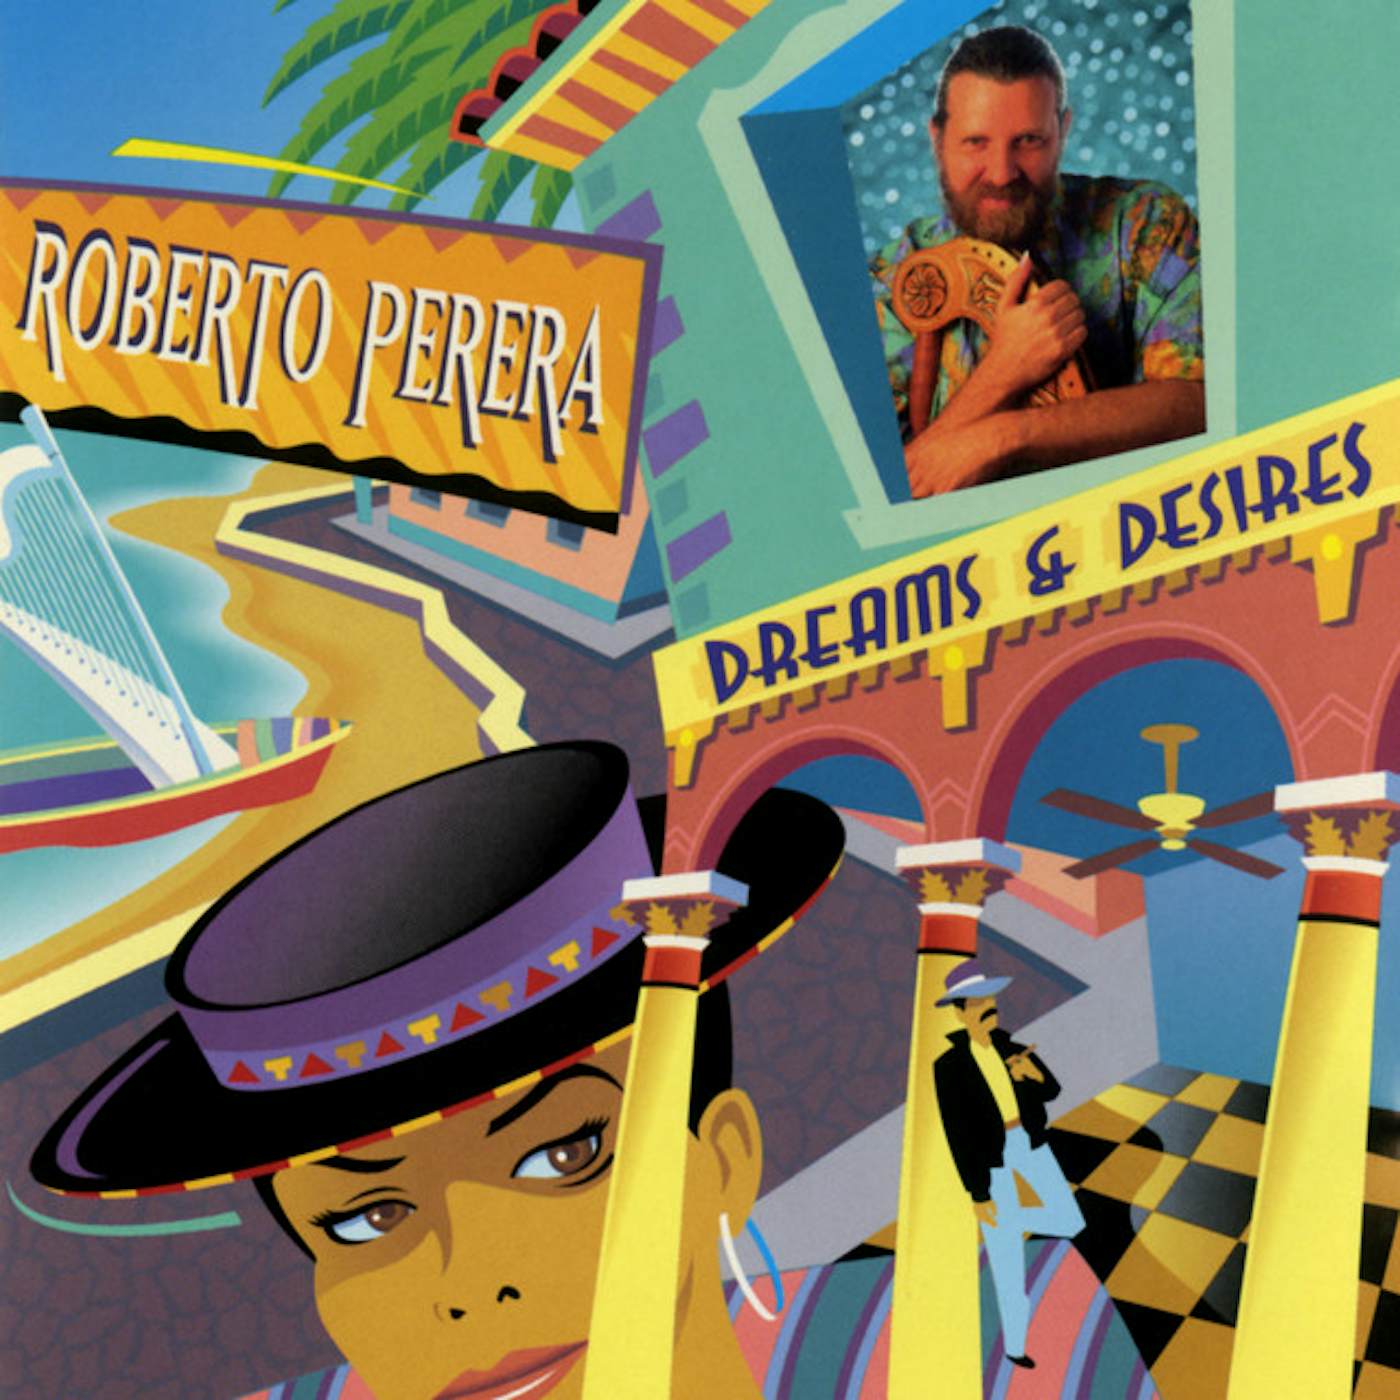 Roberto Perera DREAMS & DESIRES CD